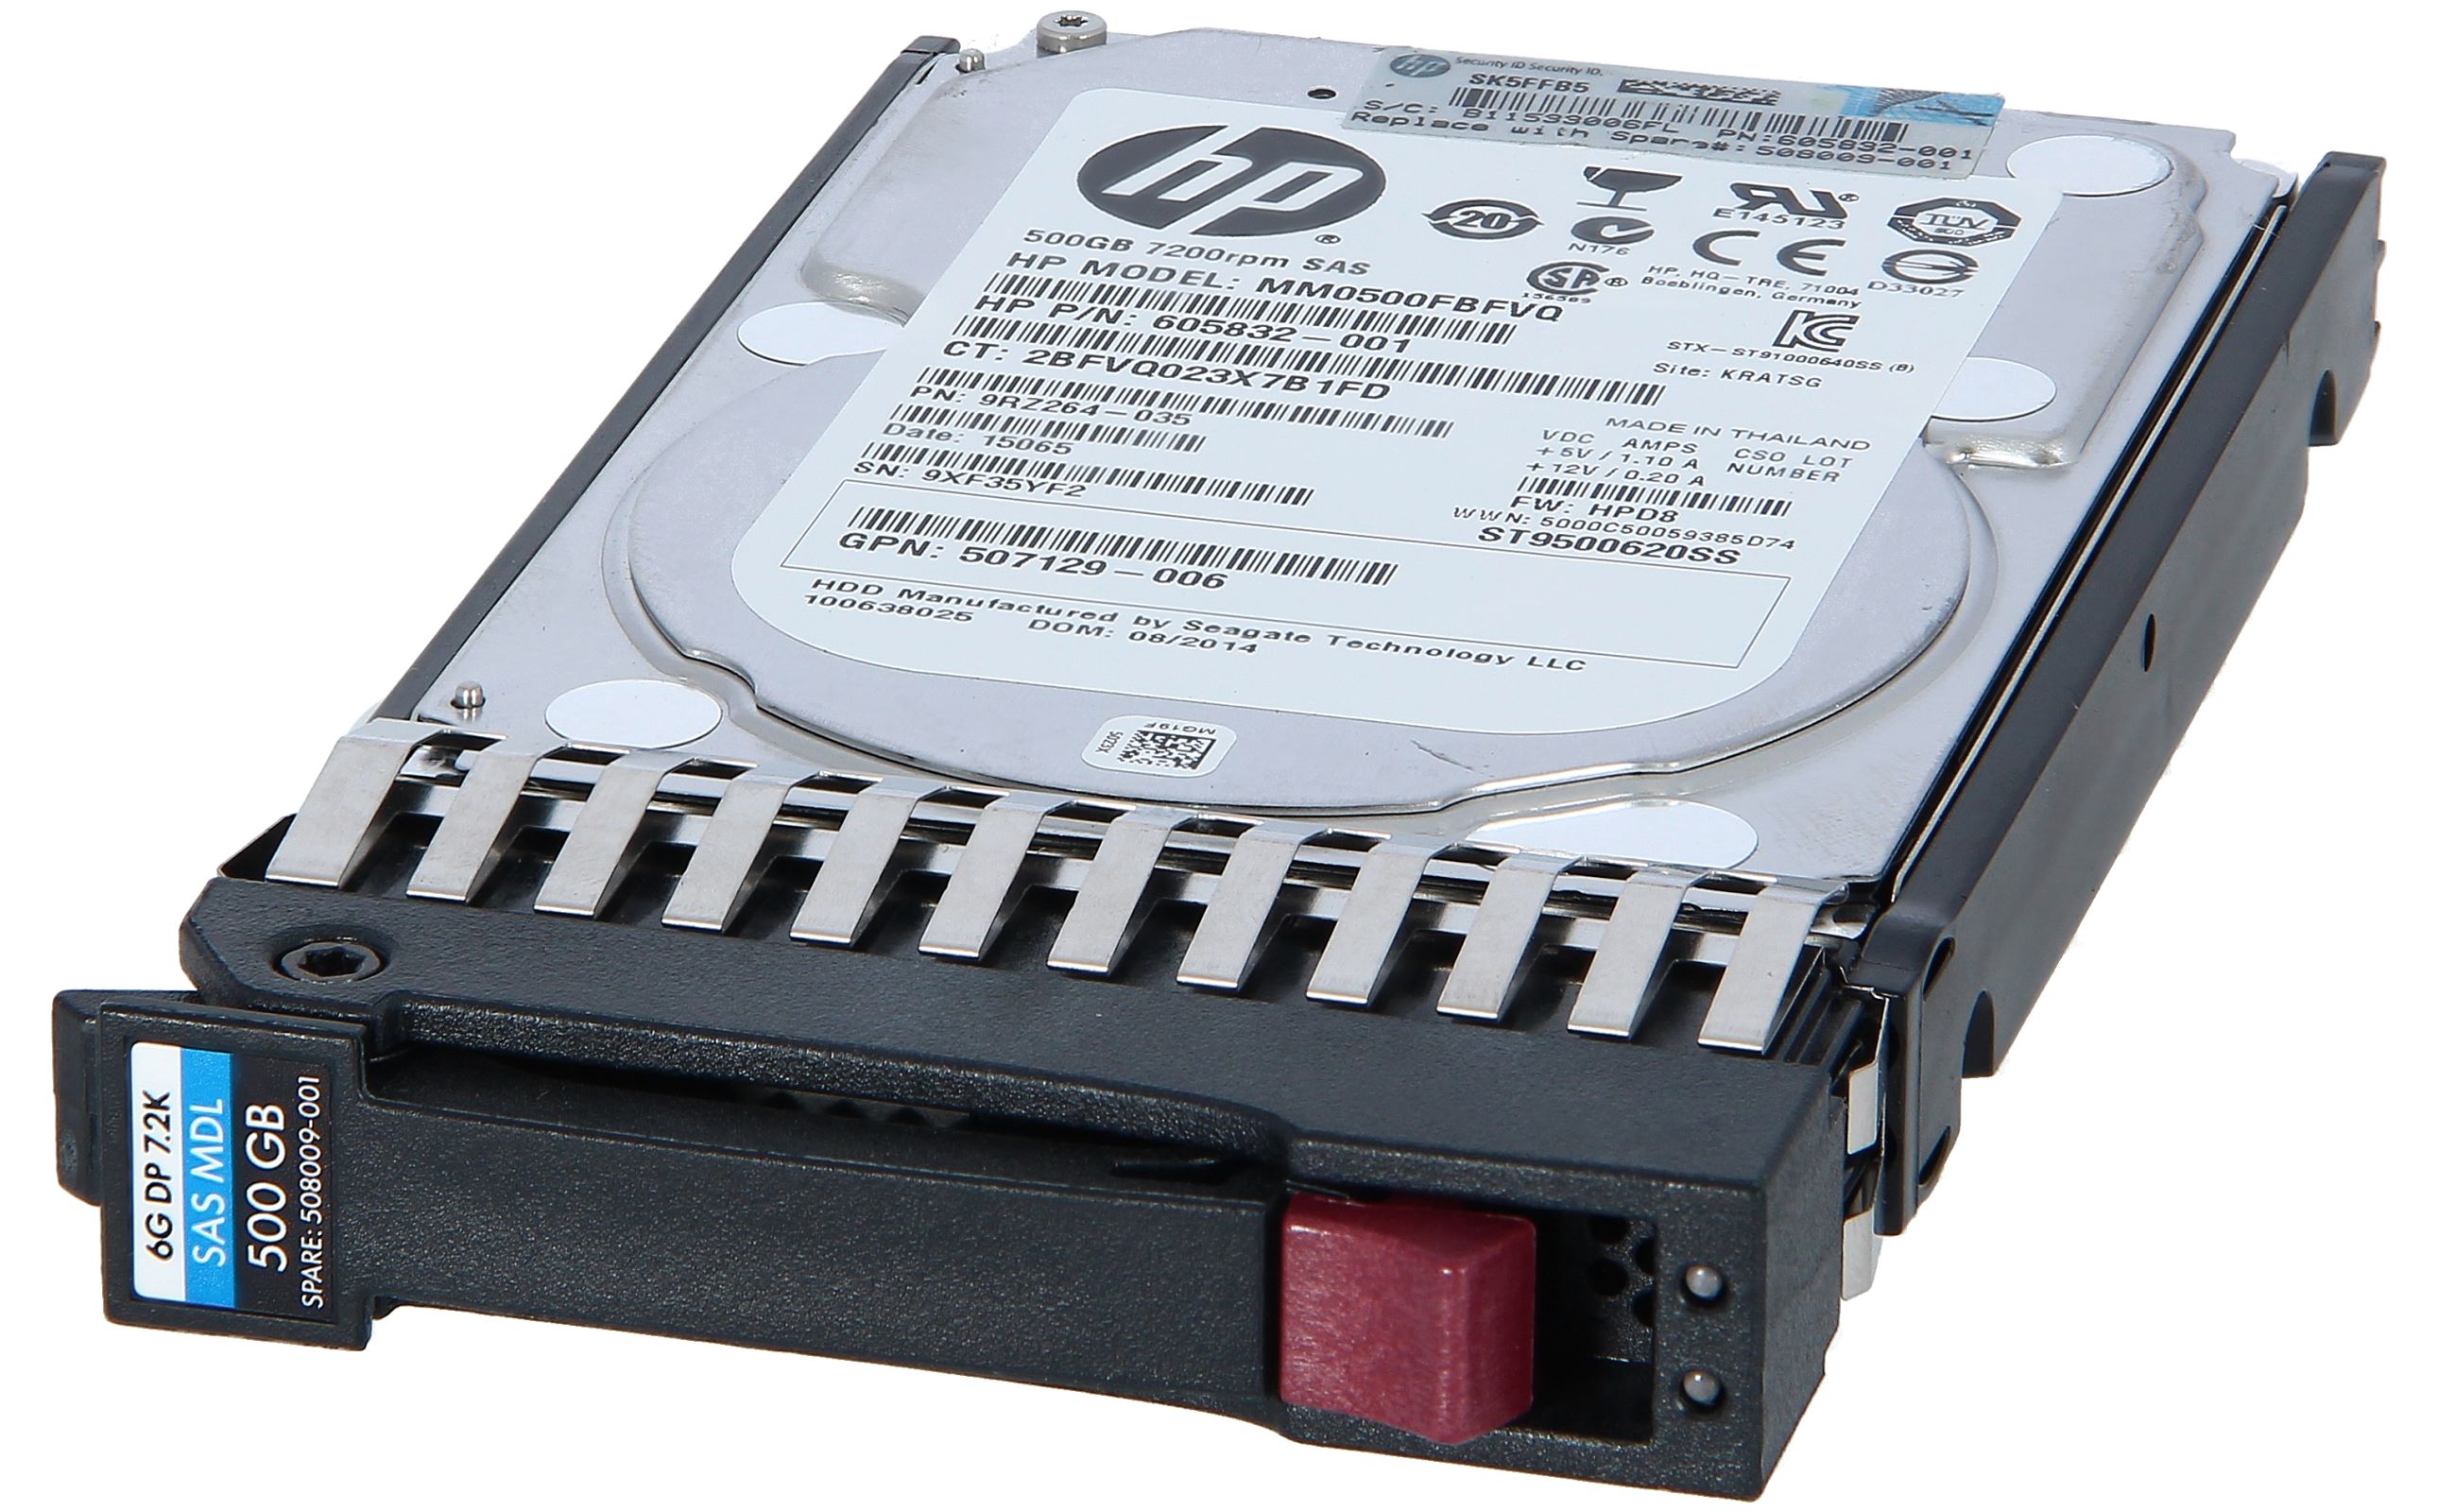 全3色/黒/赤/ベージュ 日本ヒューレットパッカード 500GB 7.2krpm ホットプラグ 2.5型 6G SAS ハードディスクドライブ  507610-B21 通販